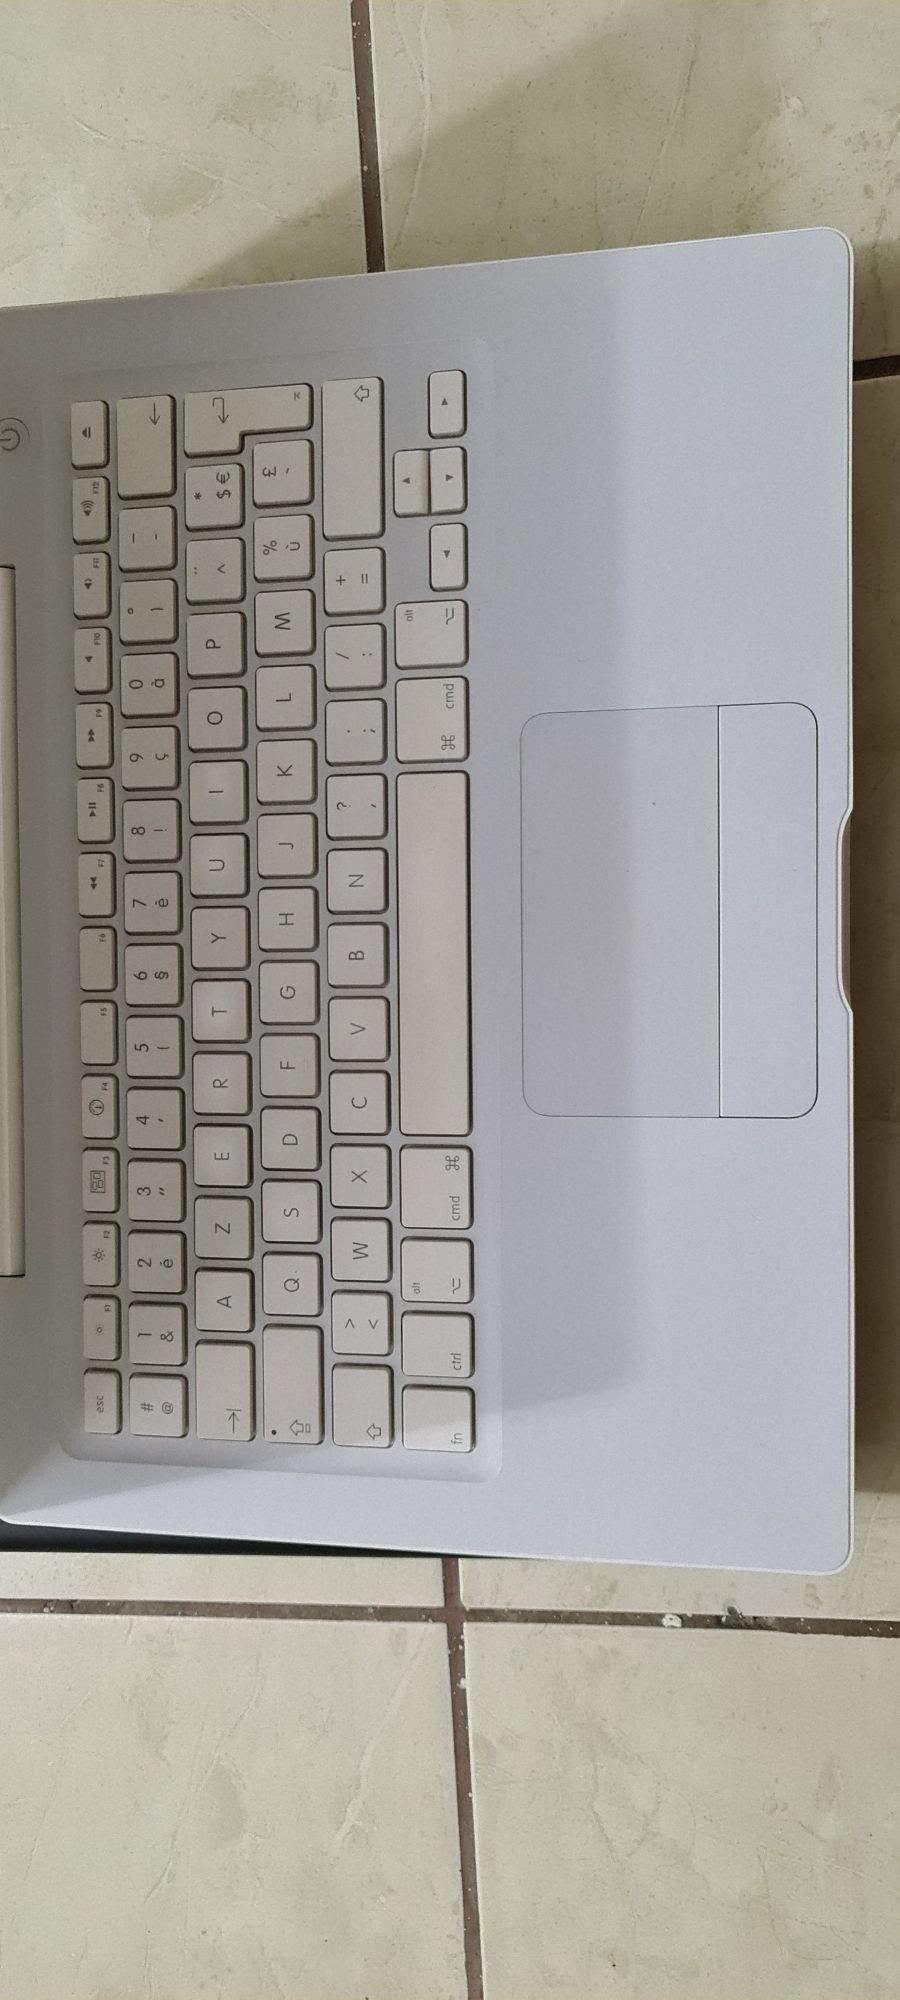 Laptop Apple MacBook A1181